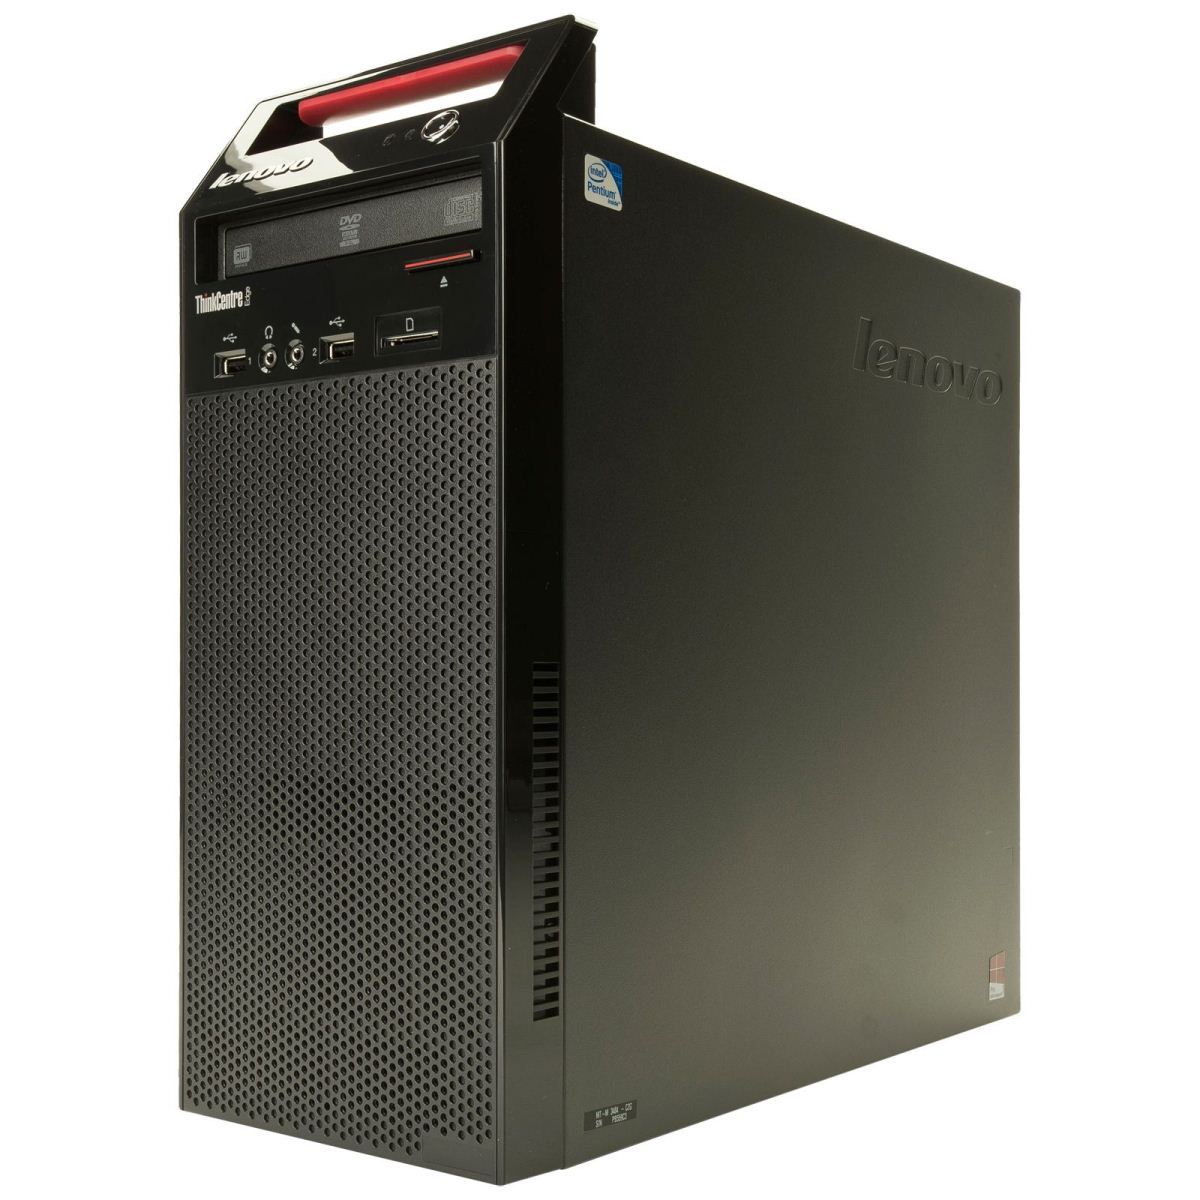 Máy tính để bàn PC Lenovo ThinkCentre E73 MT, Intel Pentium G3240/2GB/500GB (10AS00BPVA)